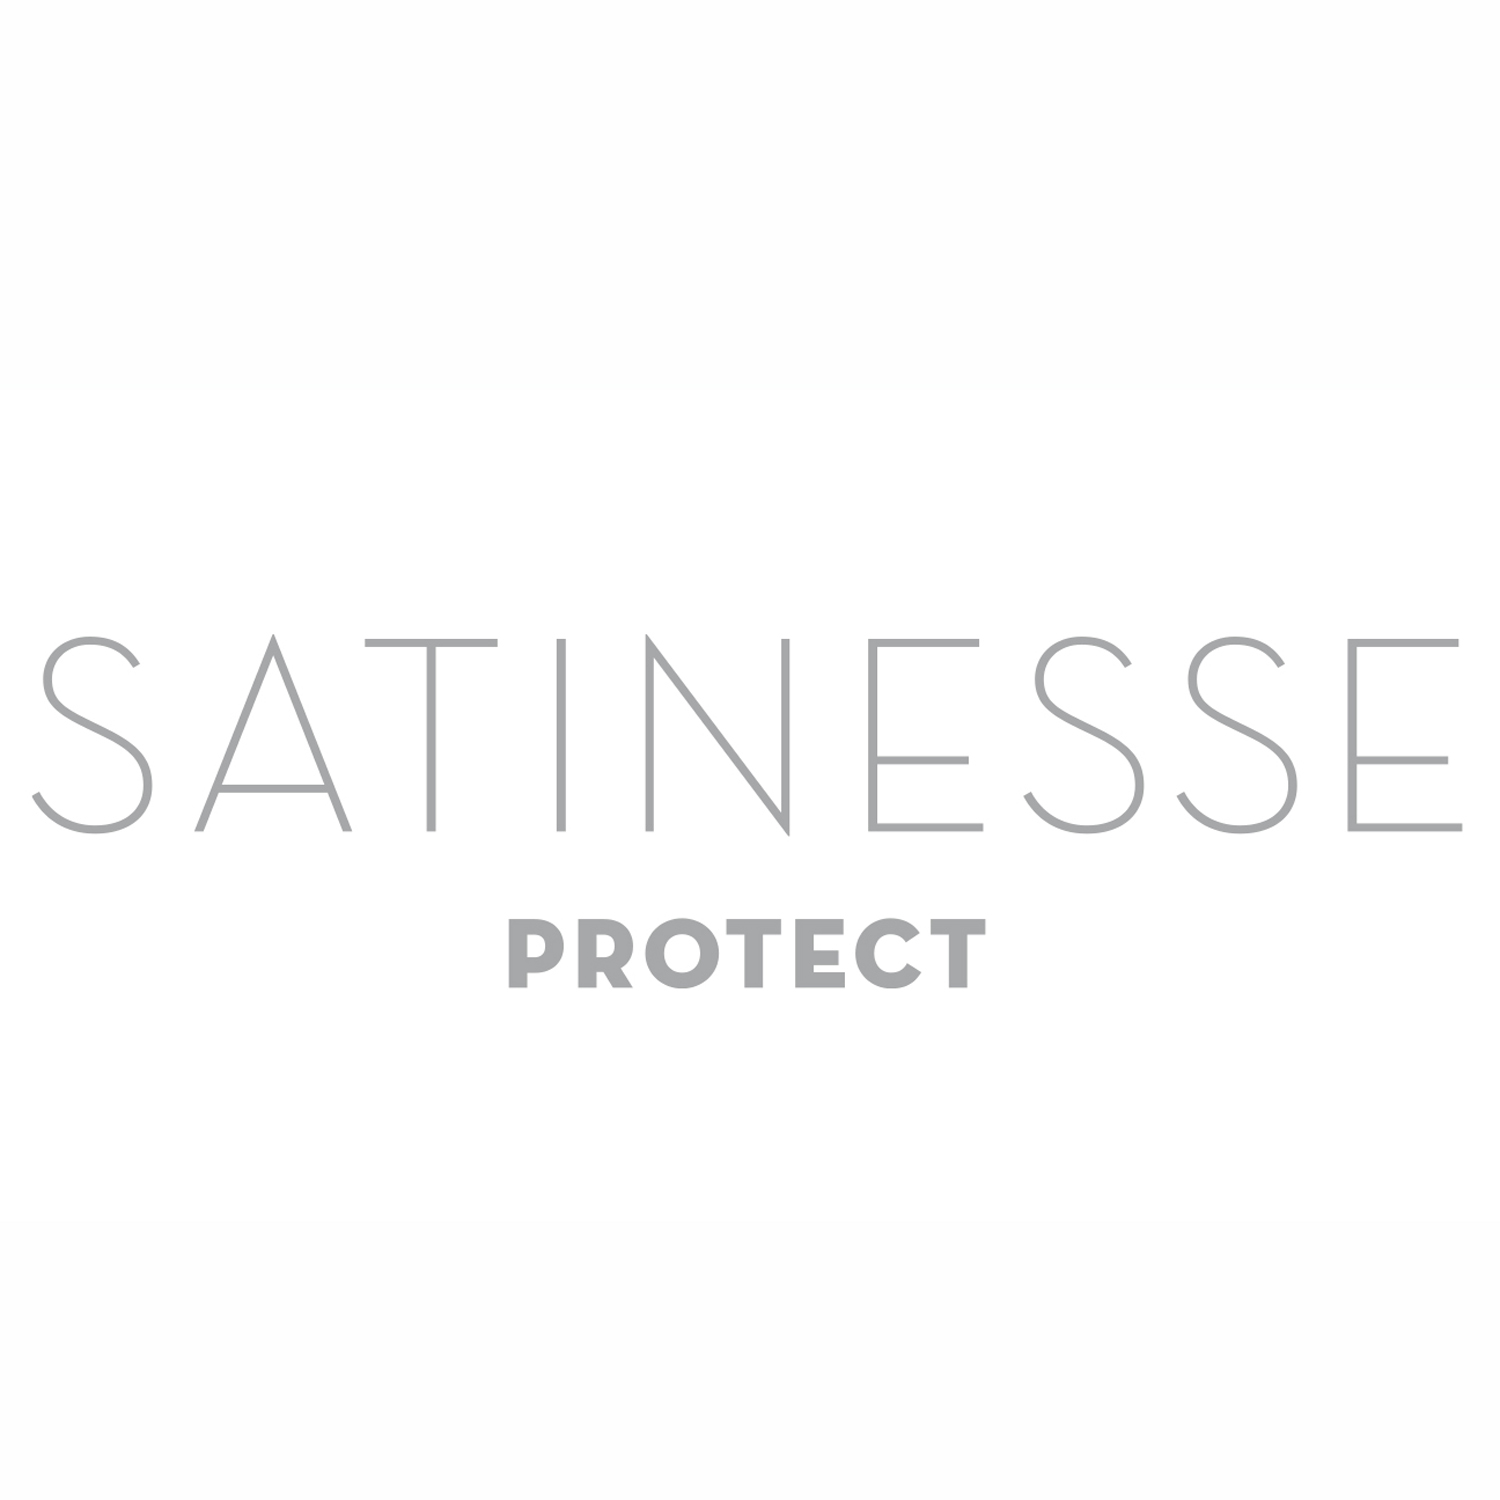 FORMESSE Matratzenschoner Satinesse Protect weiß 80x210cm